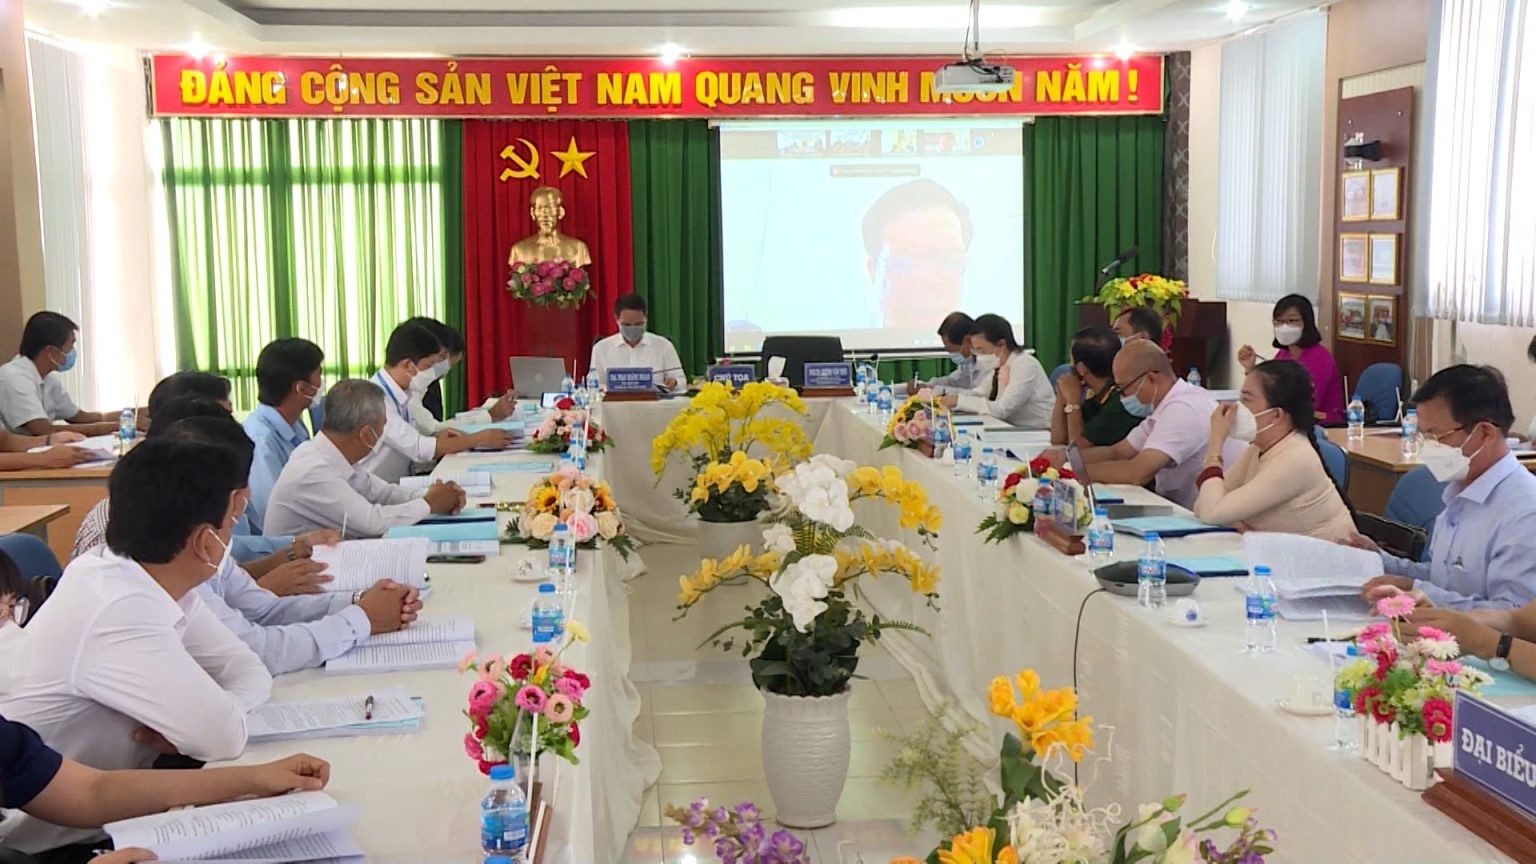 Sở Nội vụ tỉnh phối hợp với Phân viện Học viện Hành chính Quốc gia tại Thành phố Hồ Chí Minh tổ chức hội thảo khoa học “Thực trạng và giải pháp nâng cao chất lượng cán bộ, công chức cấp cơ sở tỉnh Hậu Giang”.